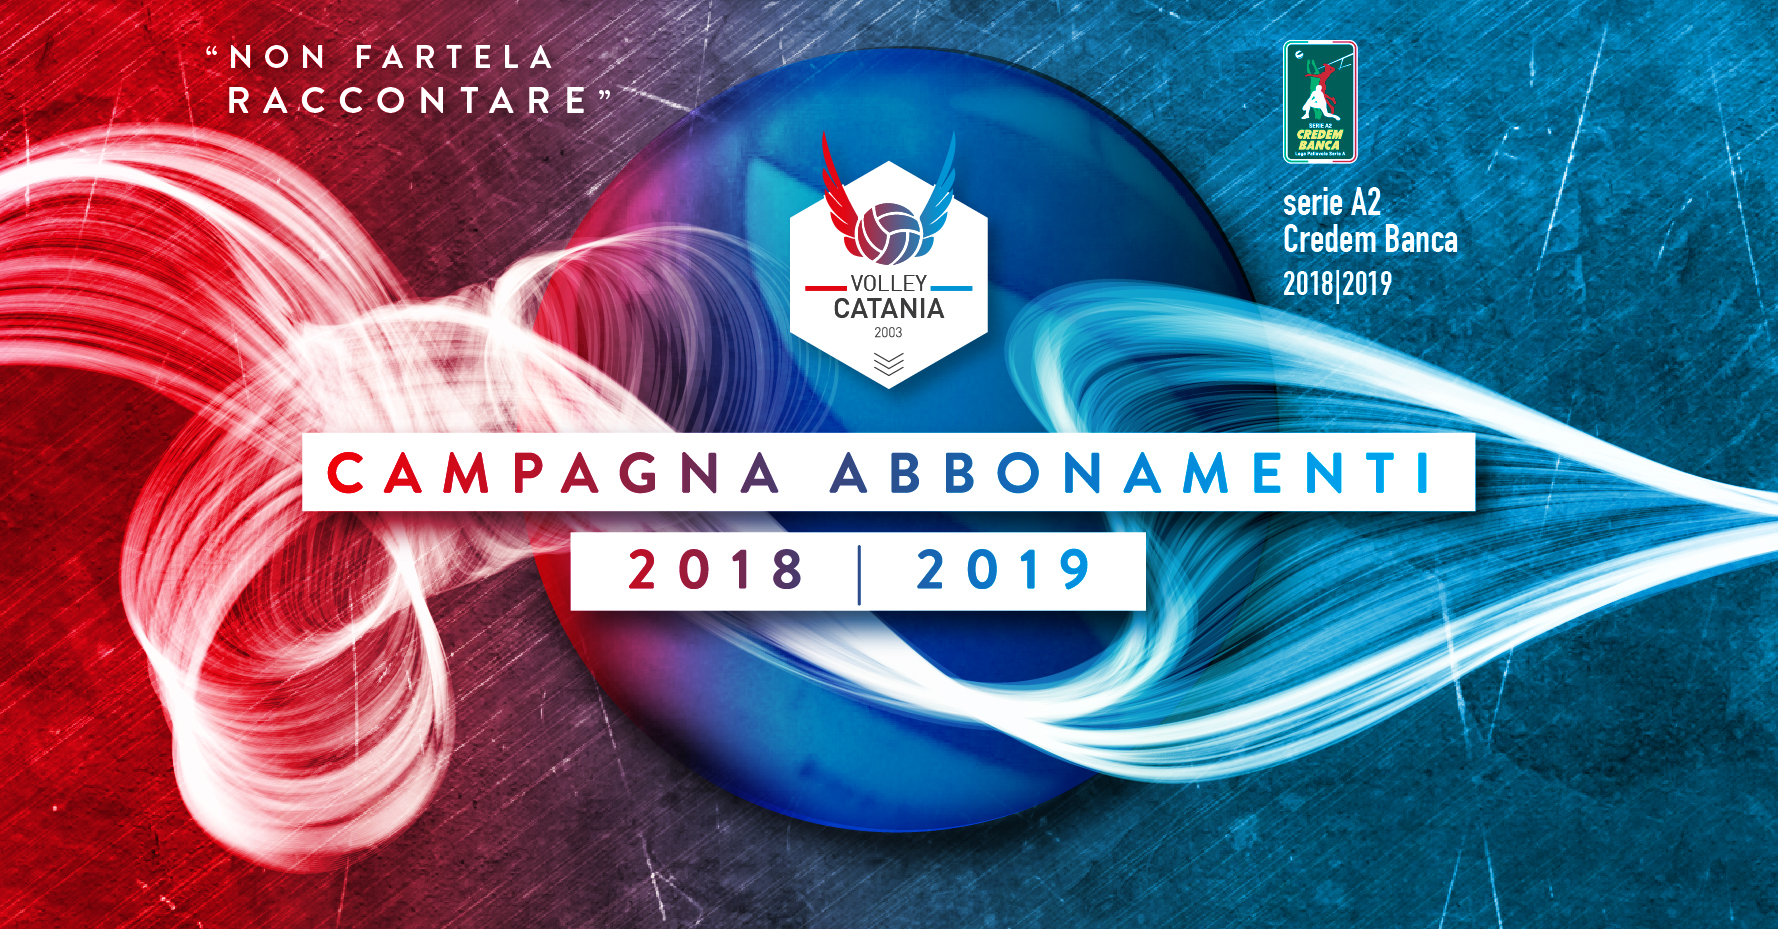 Volley Catania - Campagna abbonamenti